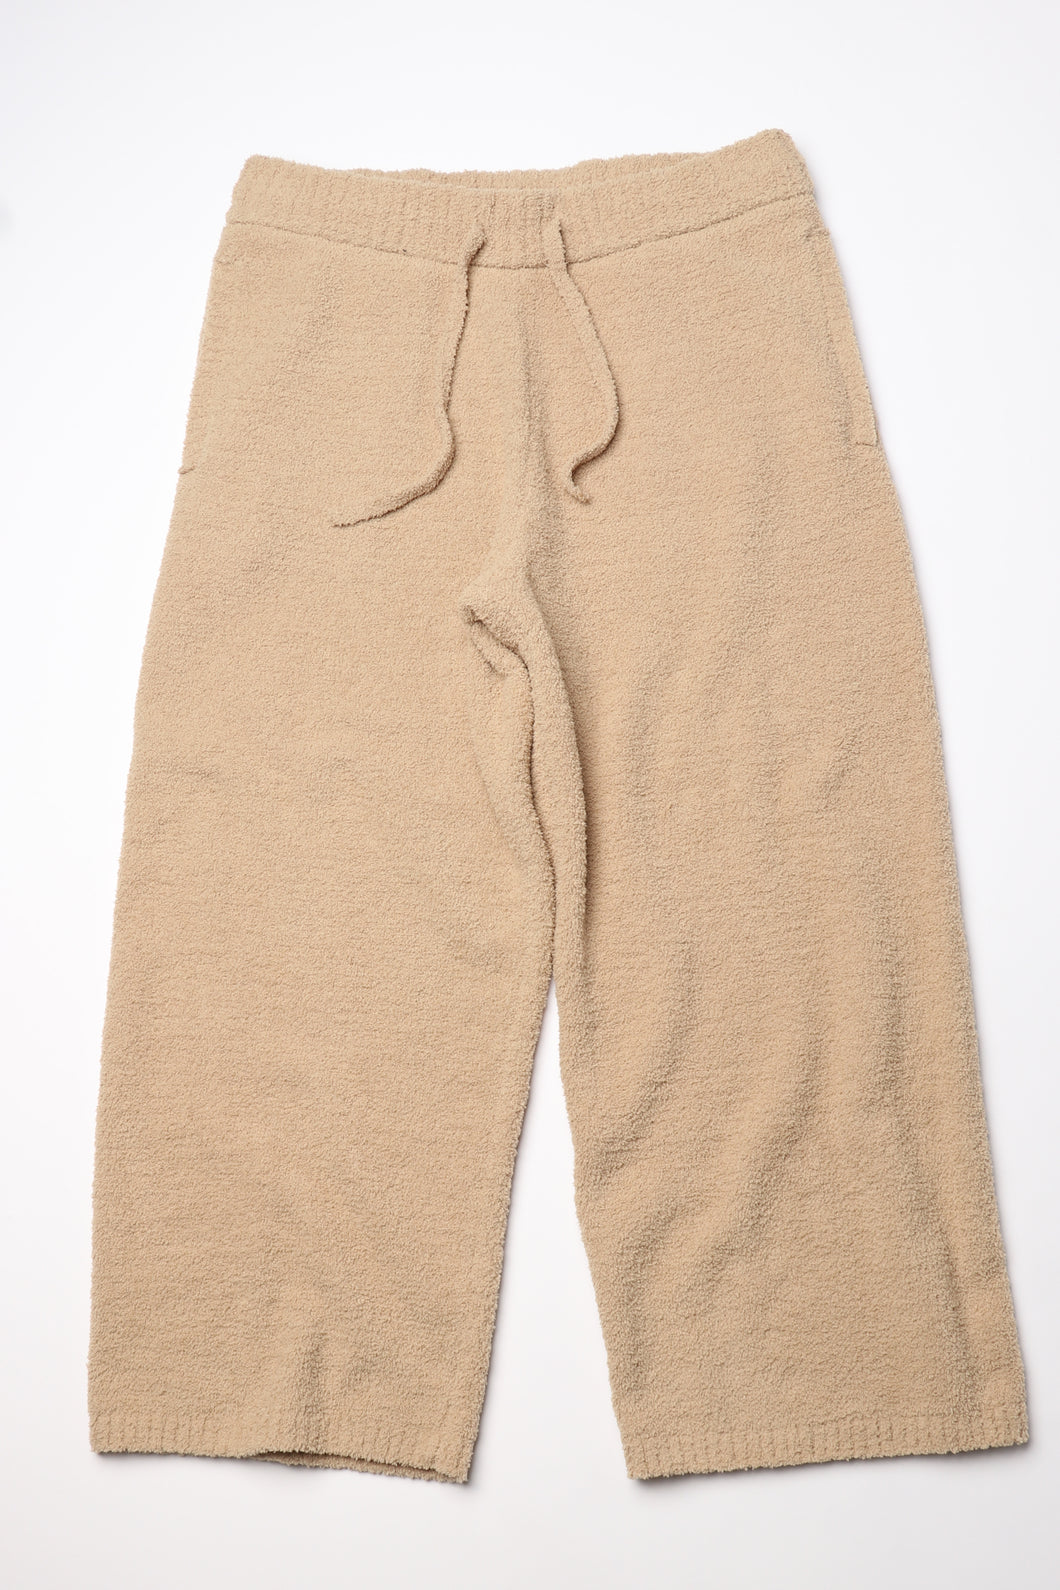 【MEN】nestwell CEDAR - Relaxed Fit Long Wide Pants -